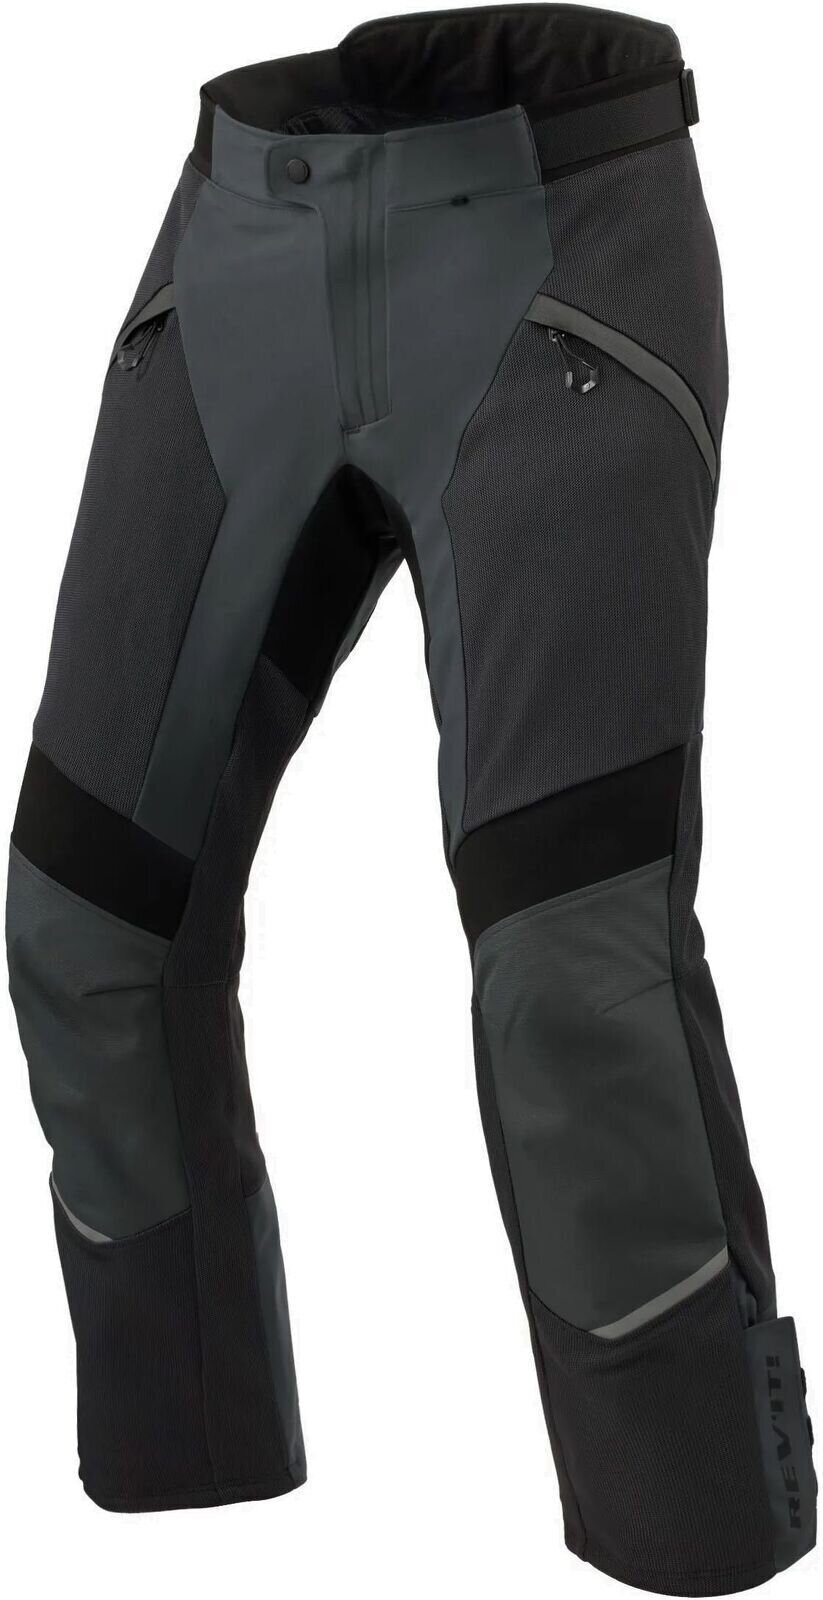 Textiel broek Rev'it! Pants Airwave 4 Black 2XL Regular Textiel broek